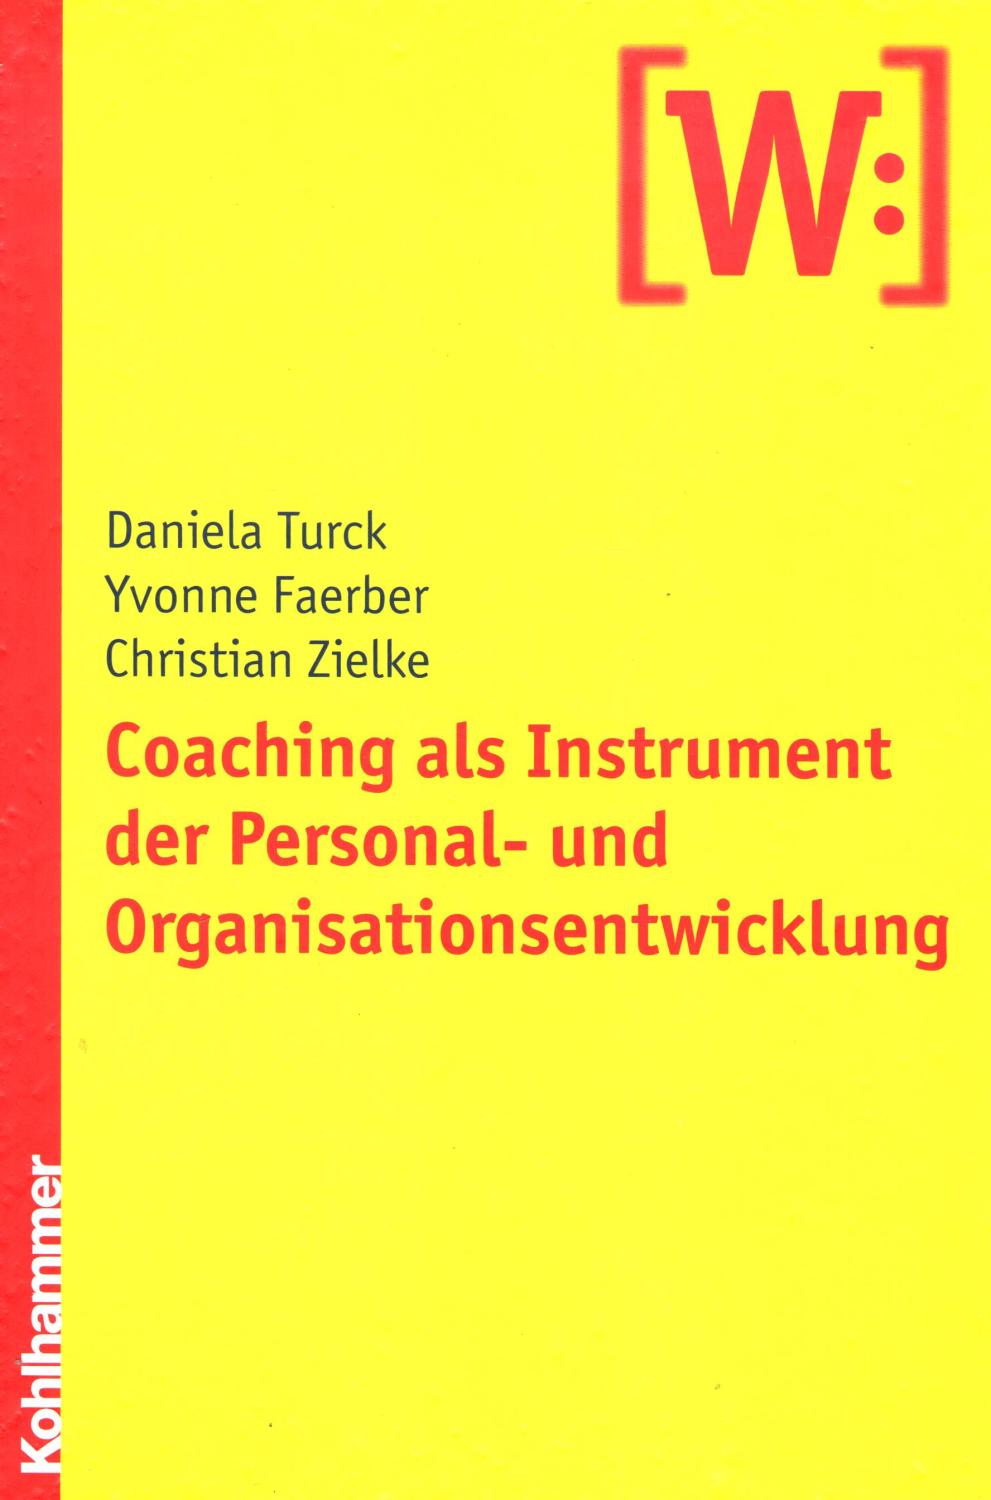 Coaching als Instrument der Personal- und Organisationsentwicklung - Daniela Turck, Yvonne Faerber, Christian Zielke